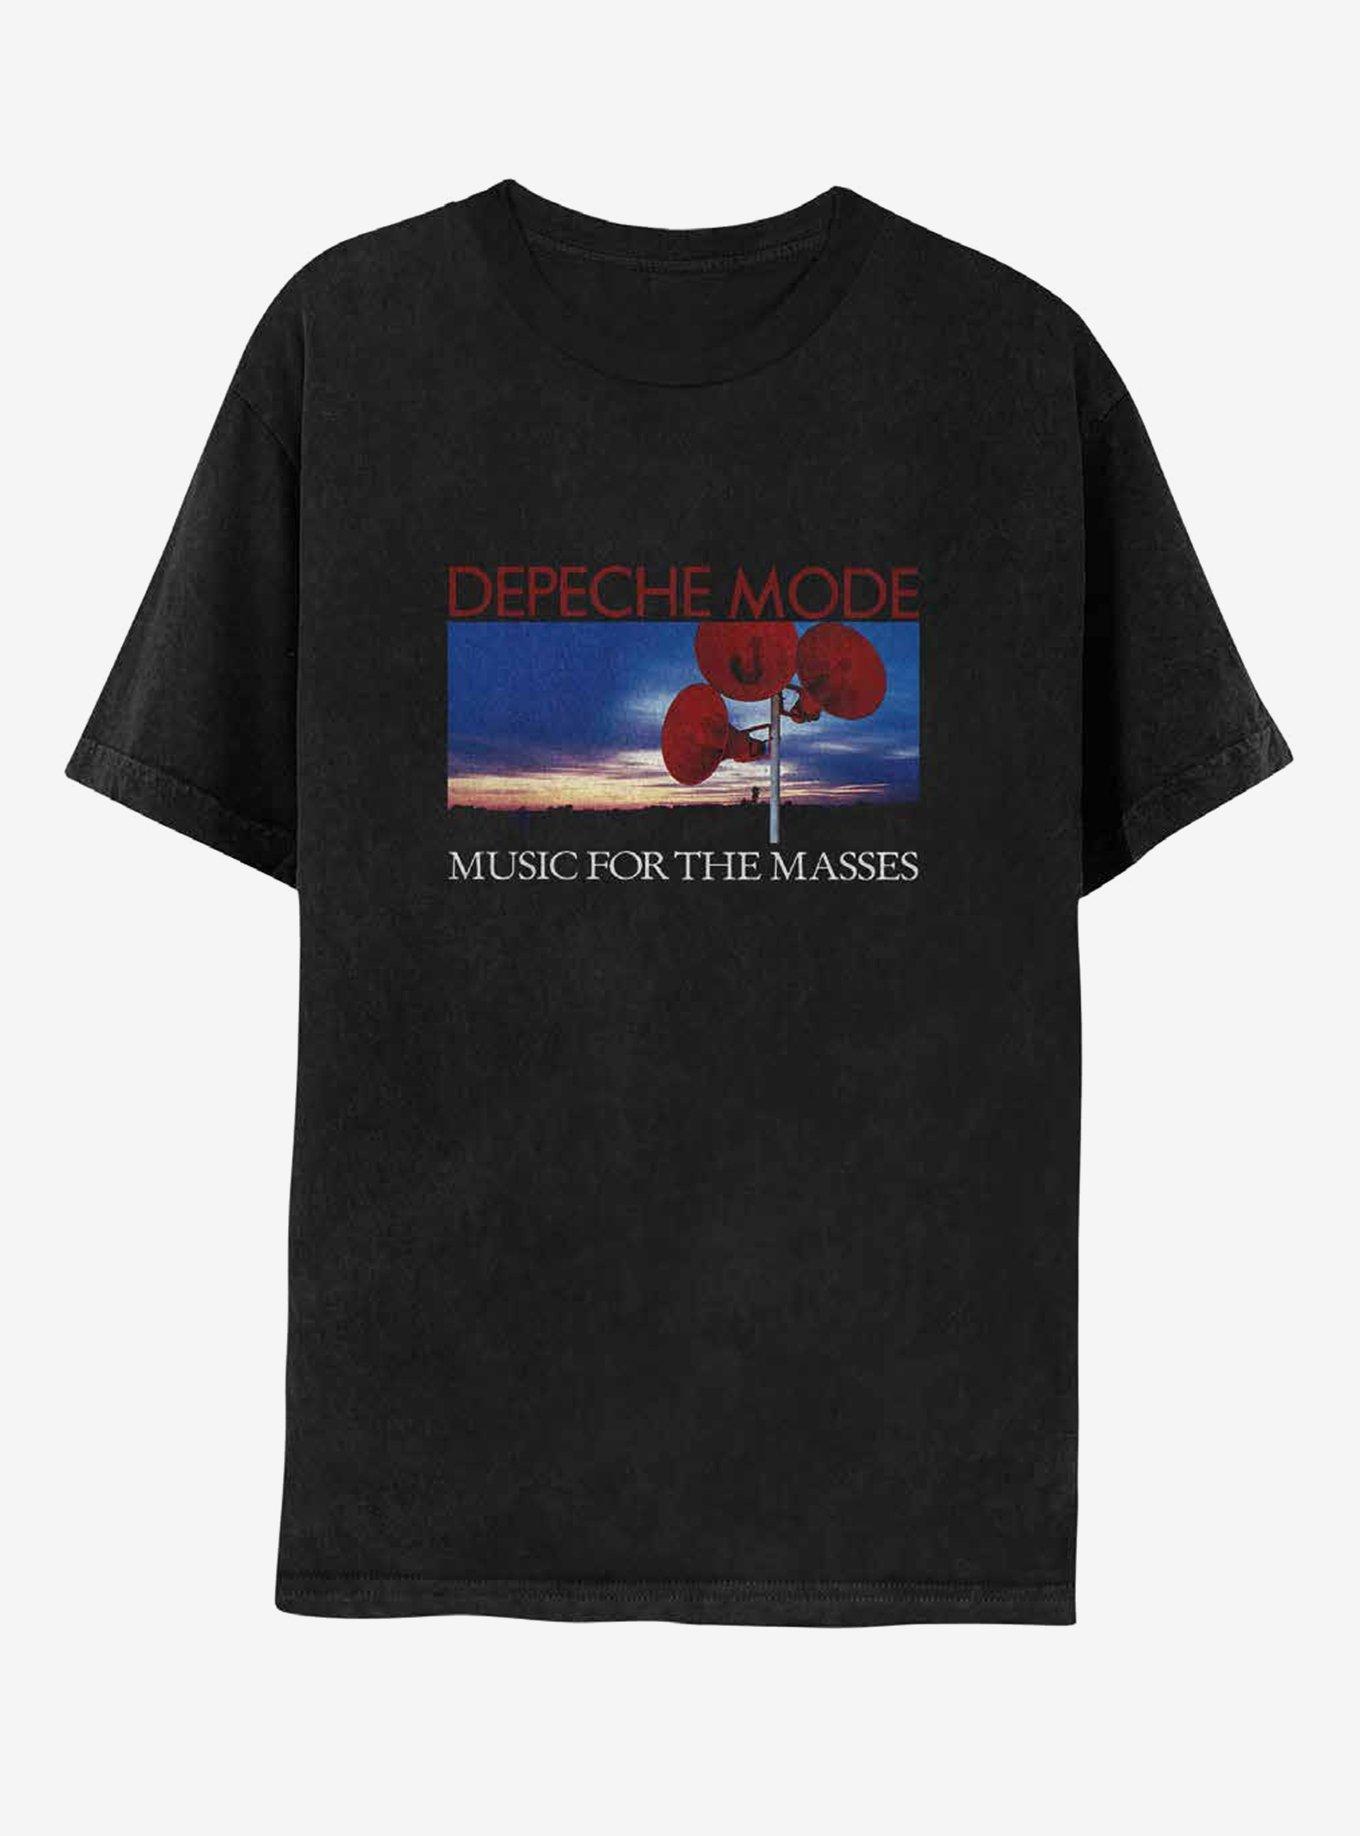 Depeche Mode Music For The Masses Album Art T-Shirt